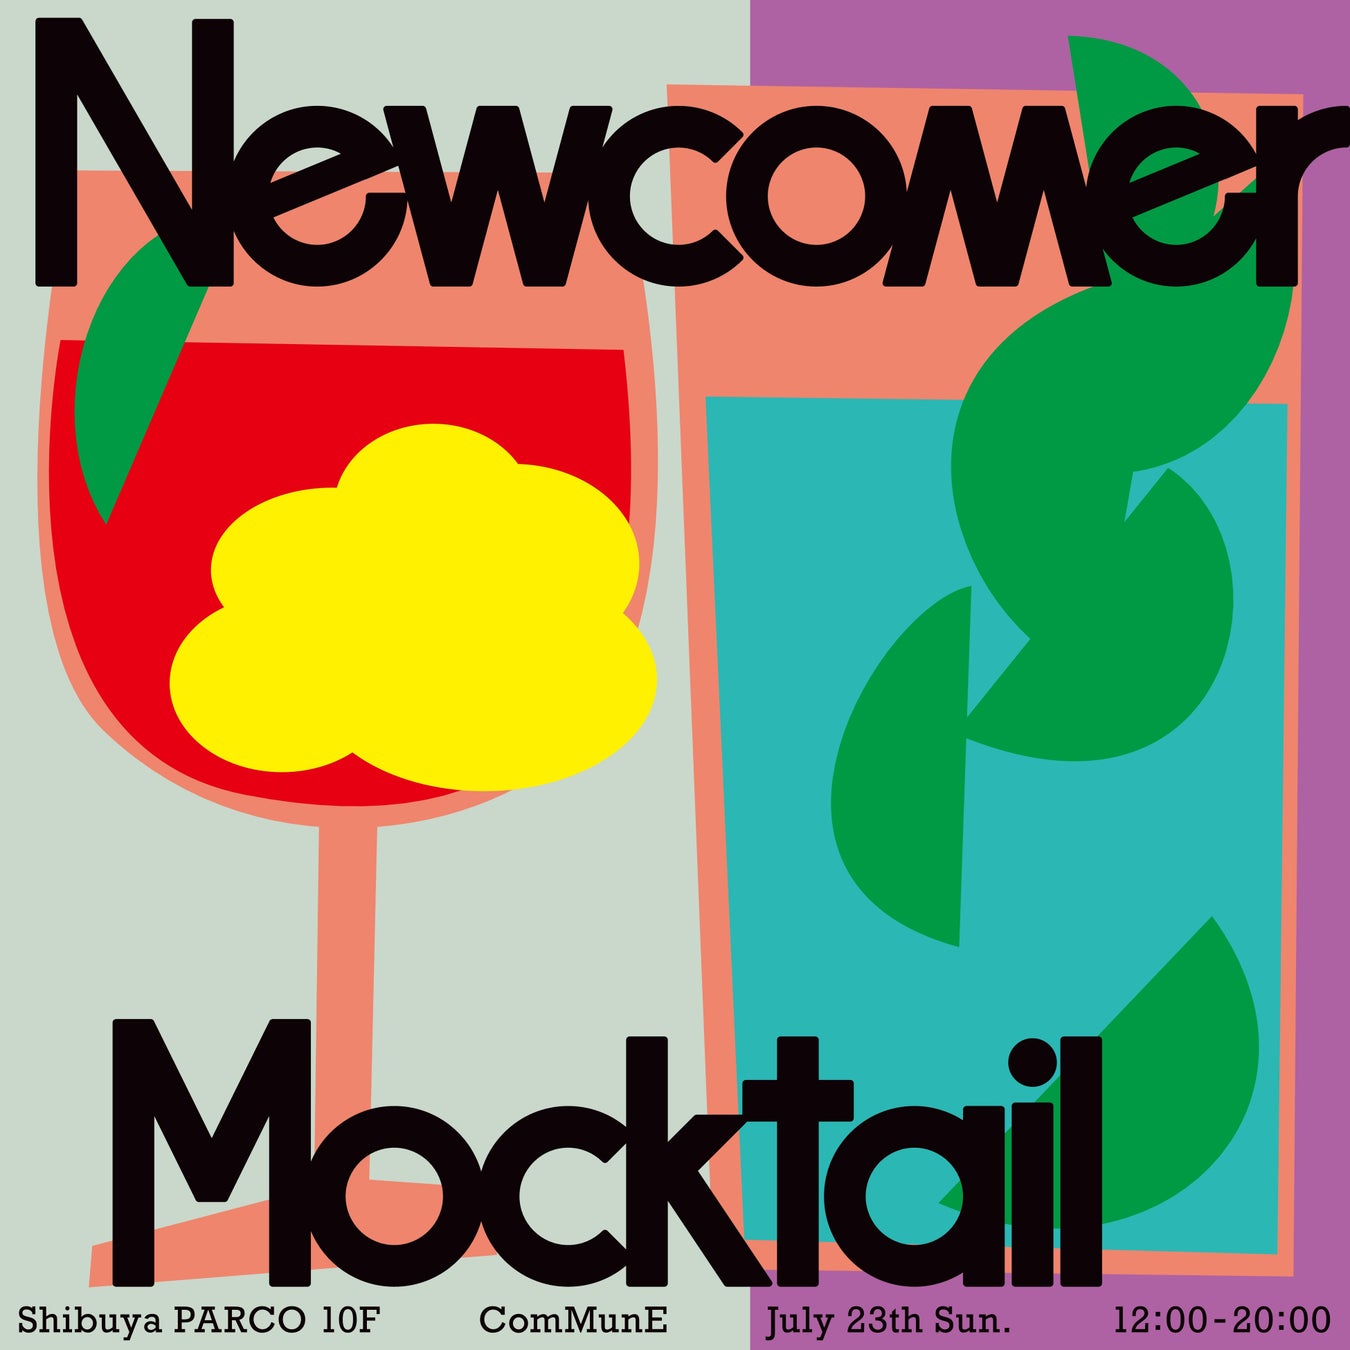 ノンアルコールカクテル「モクテル」をフィーチャーしたイベント「Newcomer Mocktail」が渋谷パルコで開催！